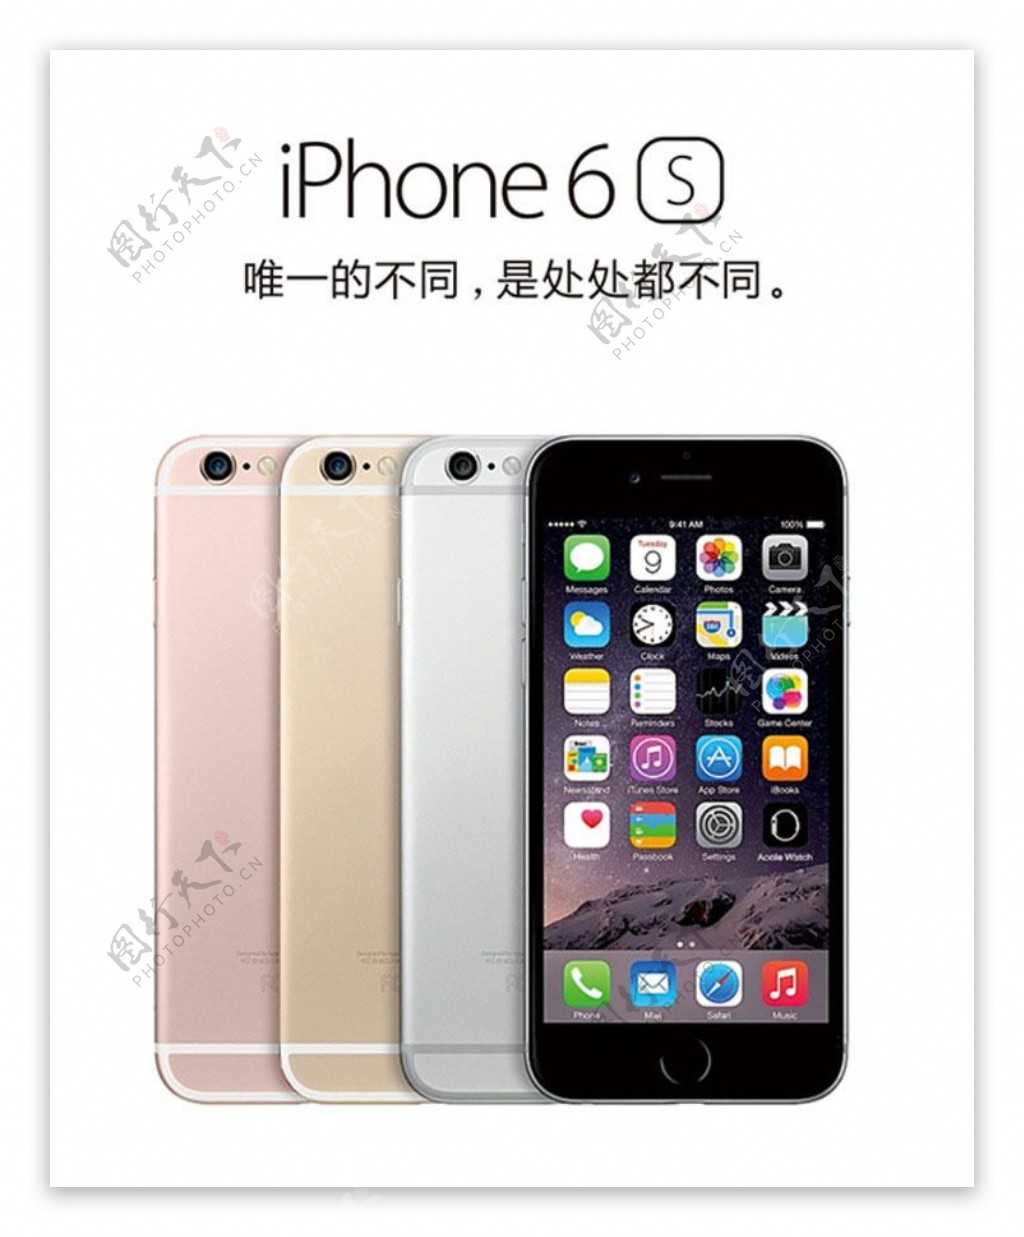 iphone6s苹果手机促销海报PSD素材